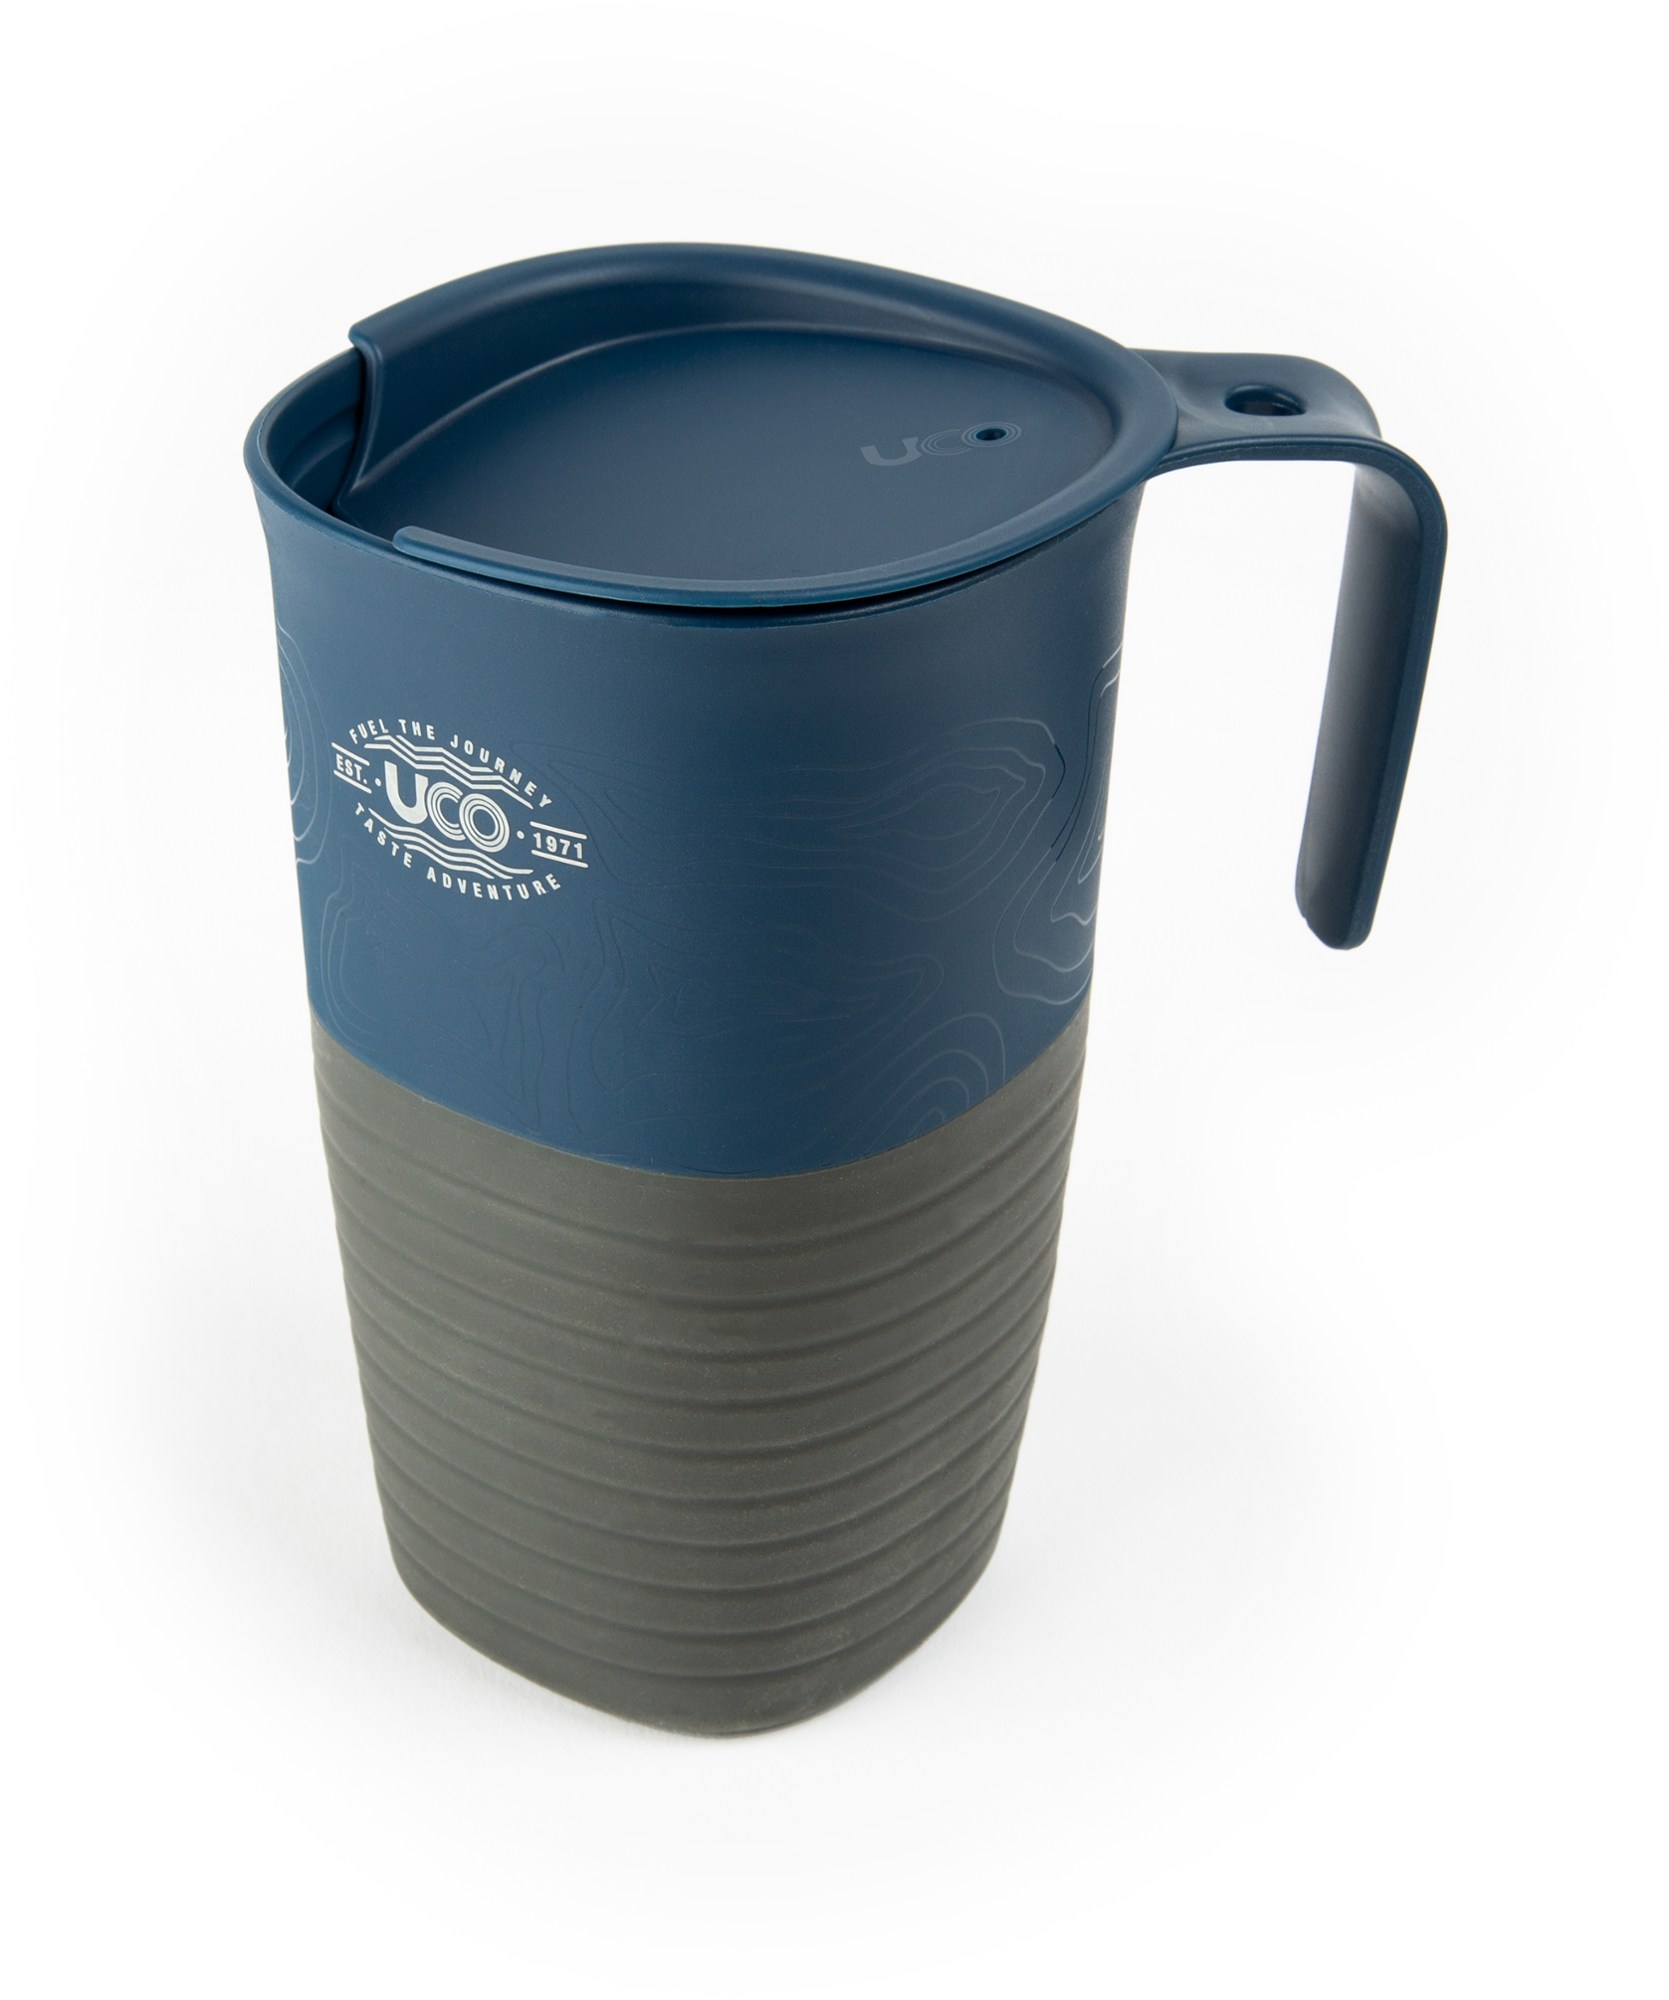 складная чашка большая складная чашка wildo оливковый Складной походный кубок ECO UCO, синий